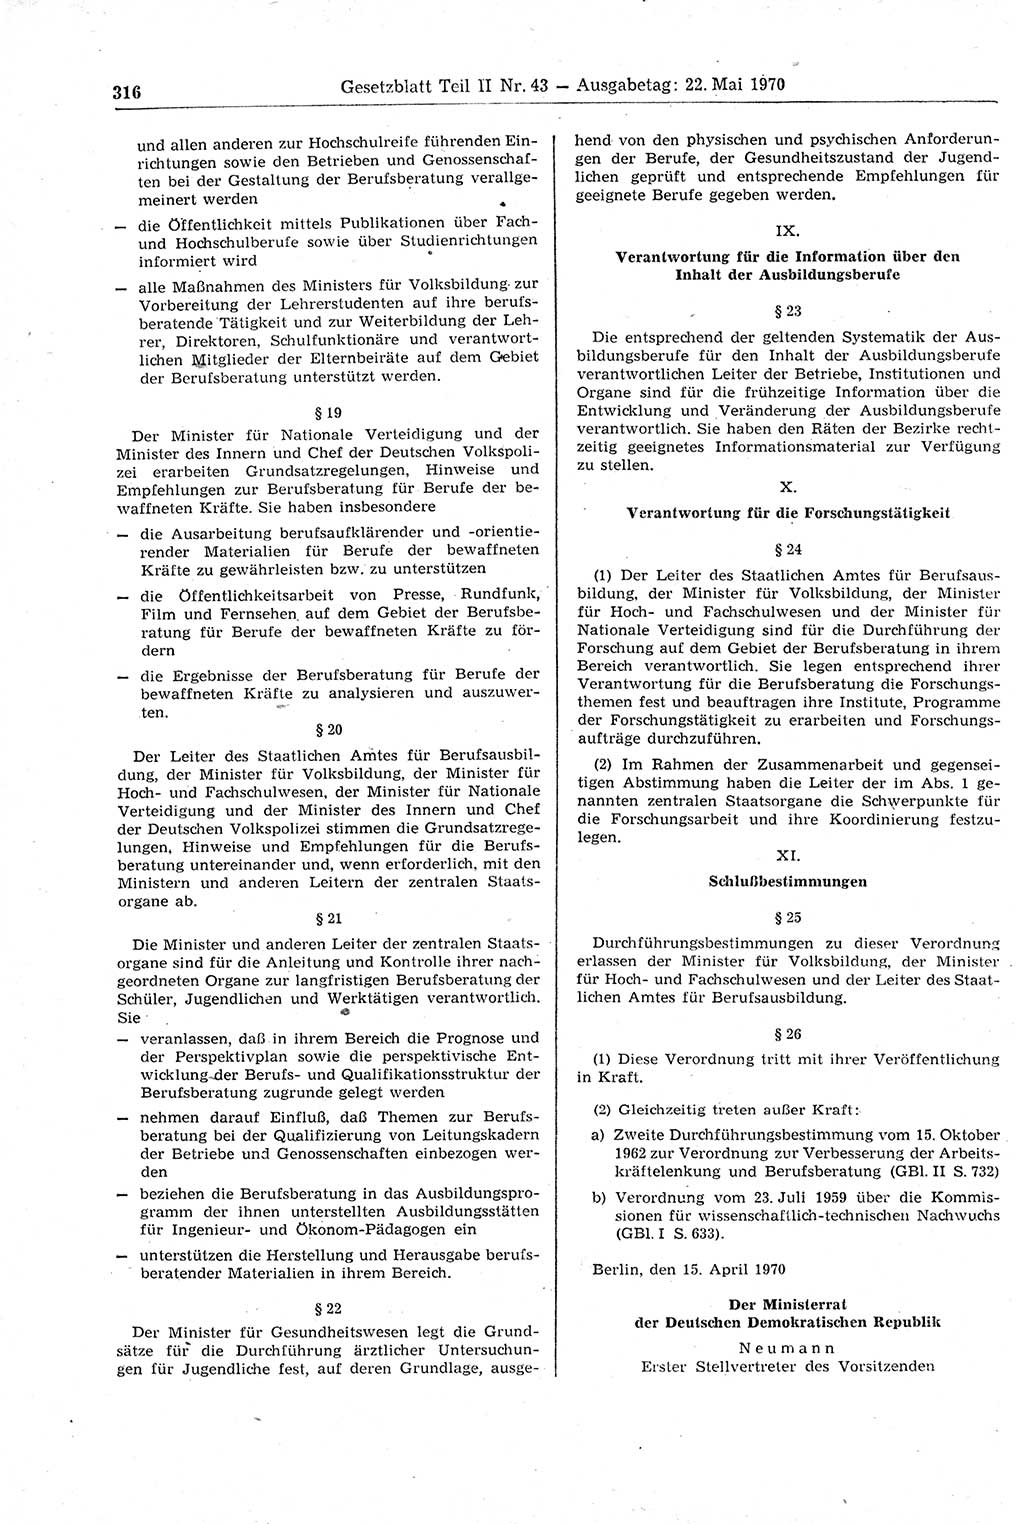 Gesetzblatt (GBl.) der Deutschen Demokratischen Republik (DDR) Teil ⅠⅠ 1970, Seite 316 (GBl. DDR ⅠⅠ 1970, S. 316)